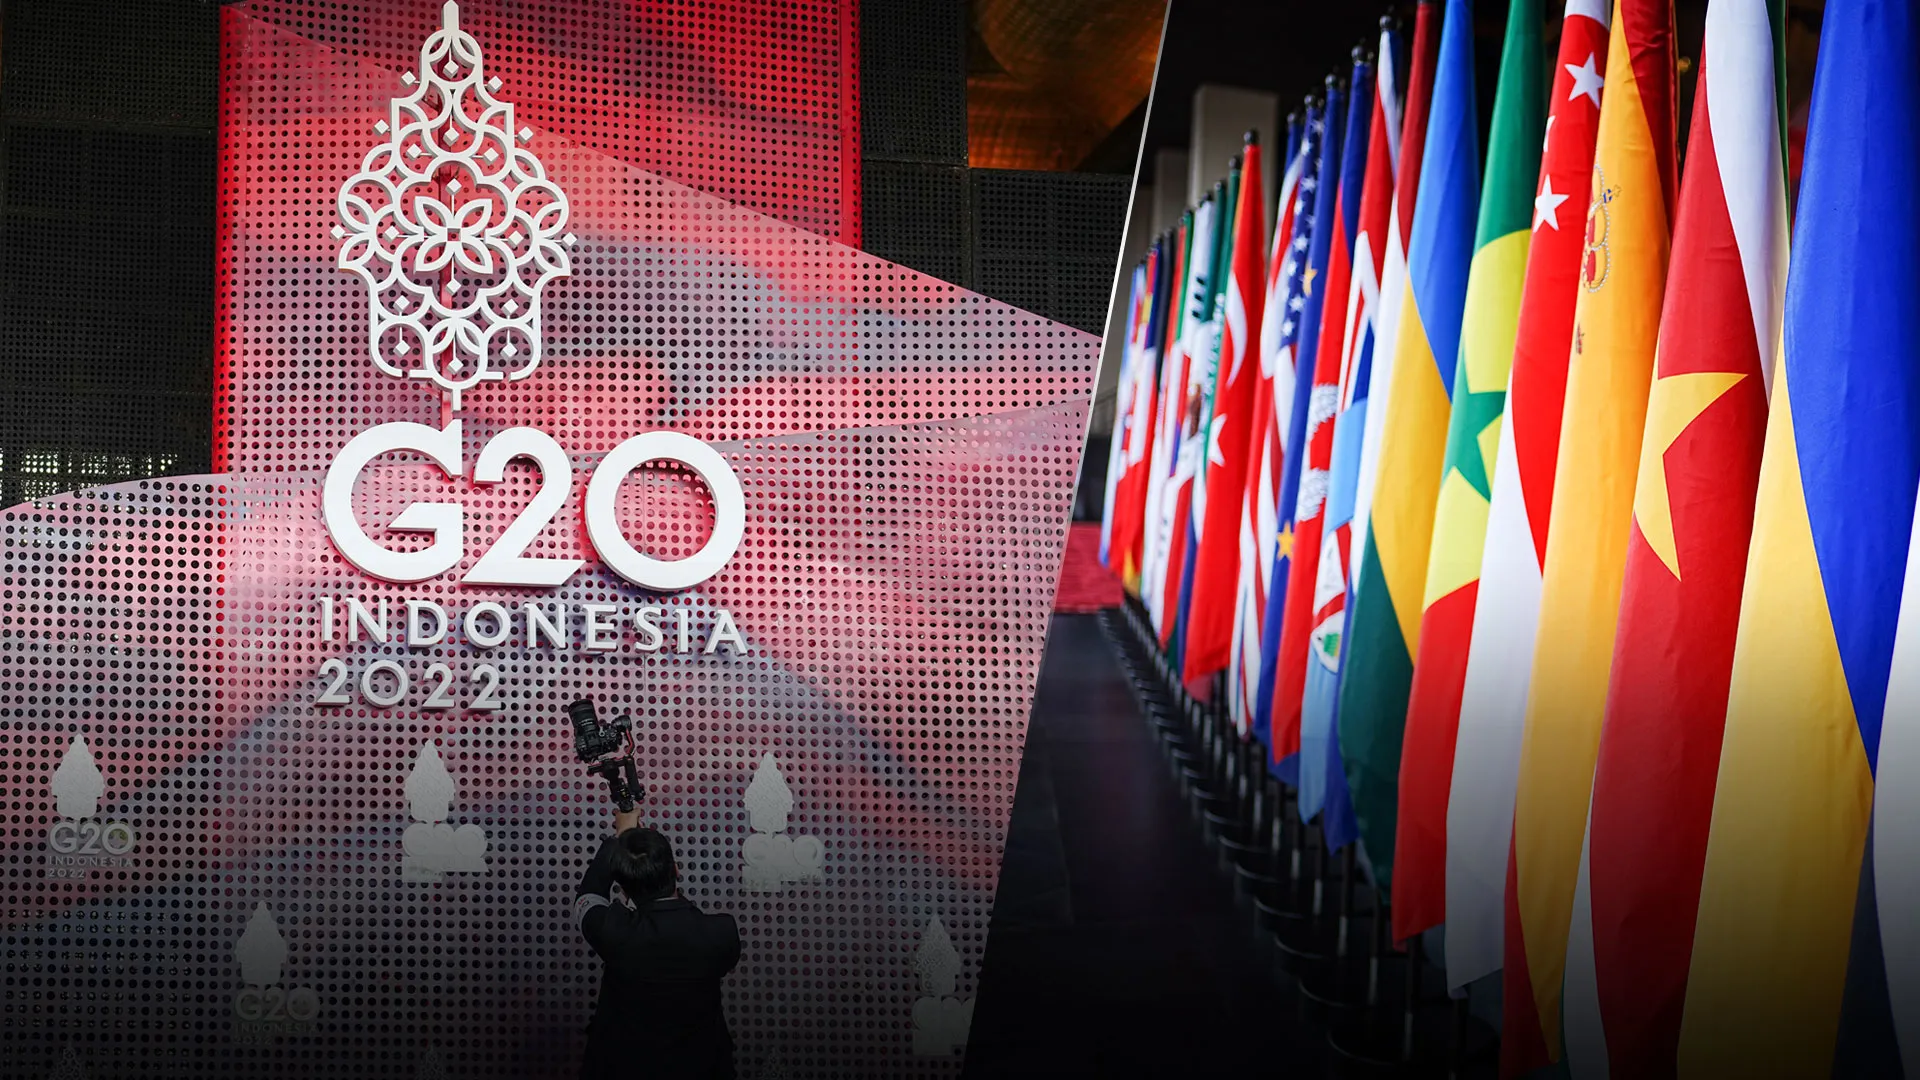 
											
											G20ning Bali sammiti yakunlandi
											
											